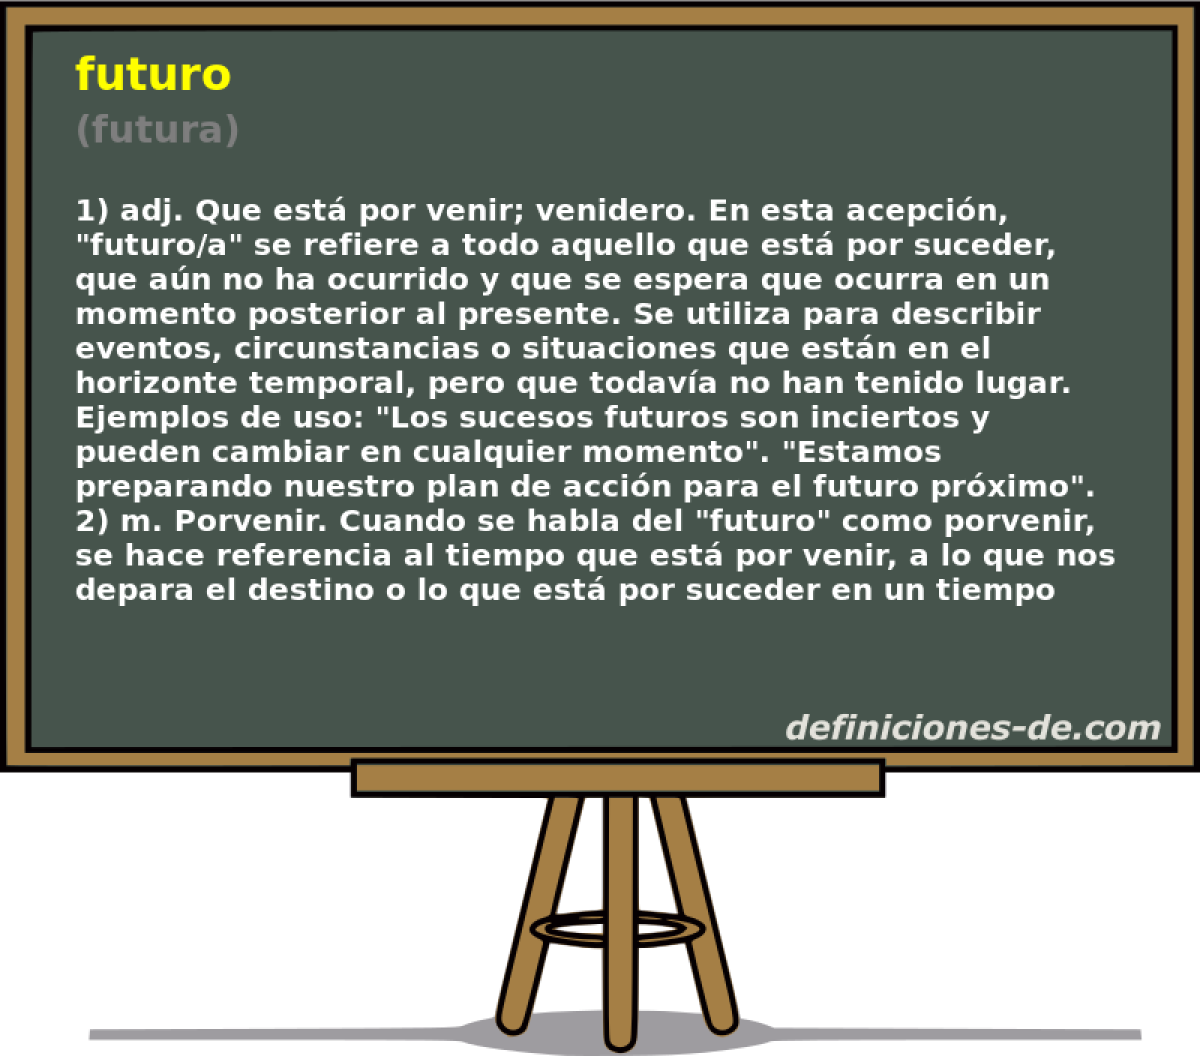 futuro (futura)